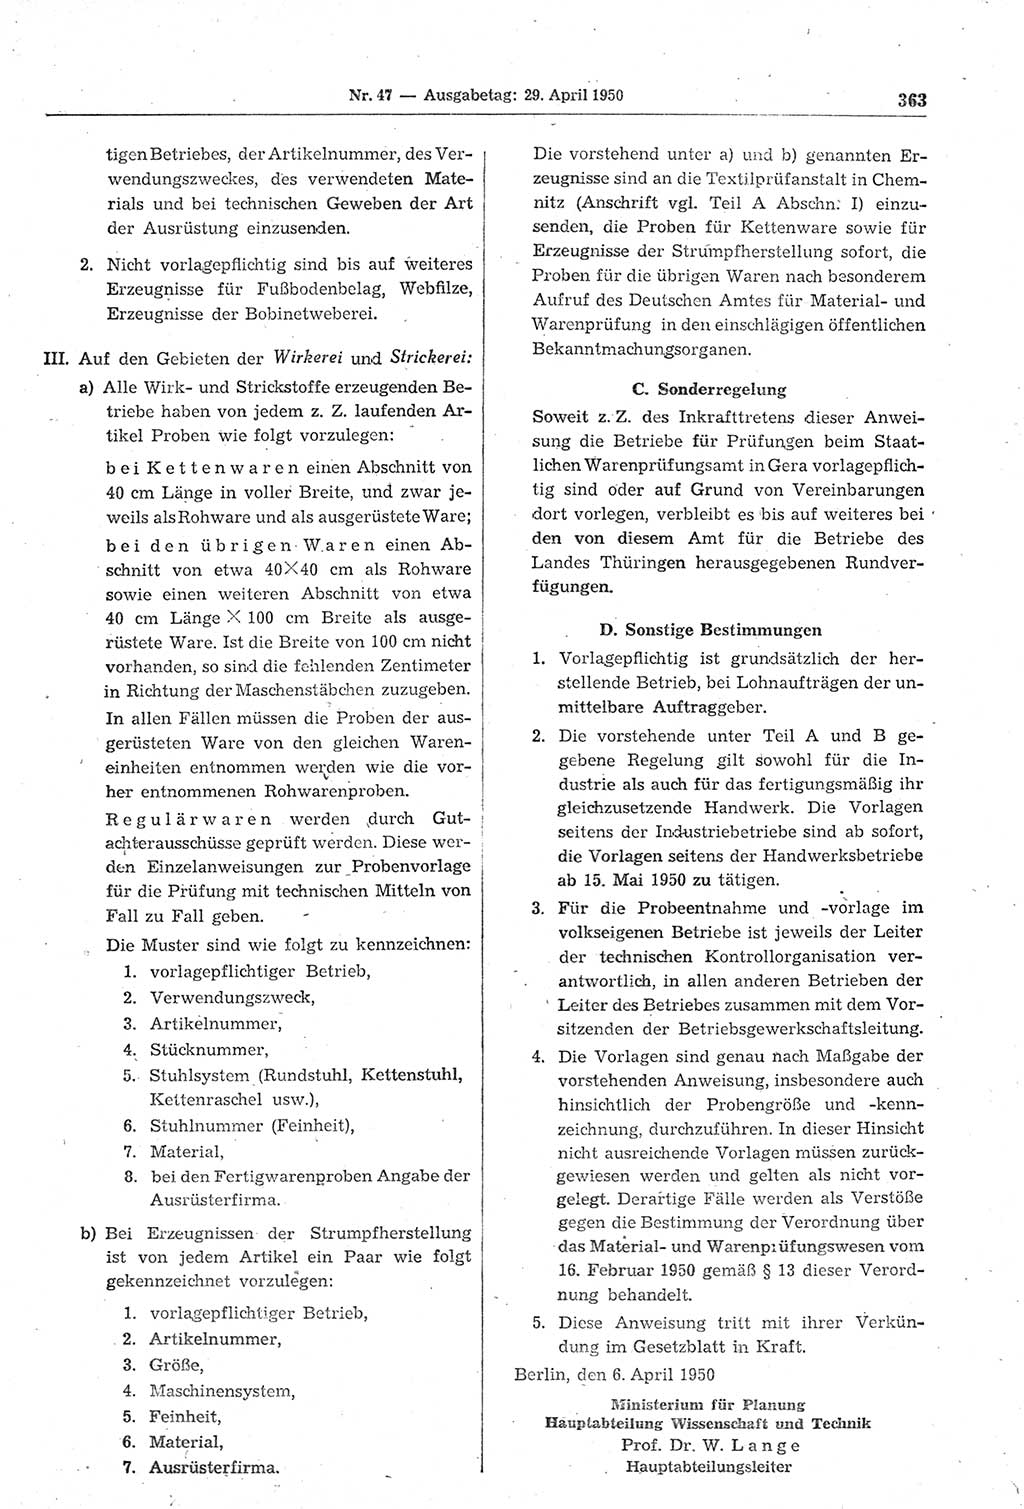 Gesetzblatt (GBl.) der Deutschen Demokratischen Republik (DDR) 1950, Seite 363 (GBl. DDR 1950, S. 363)